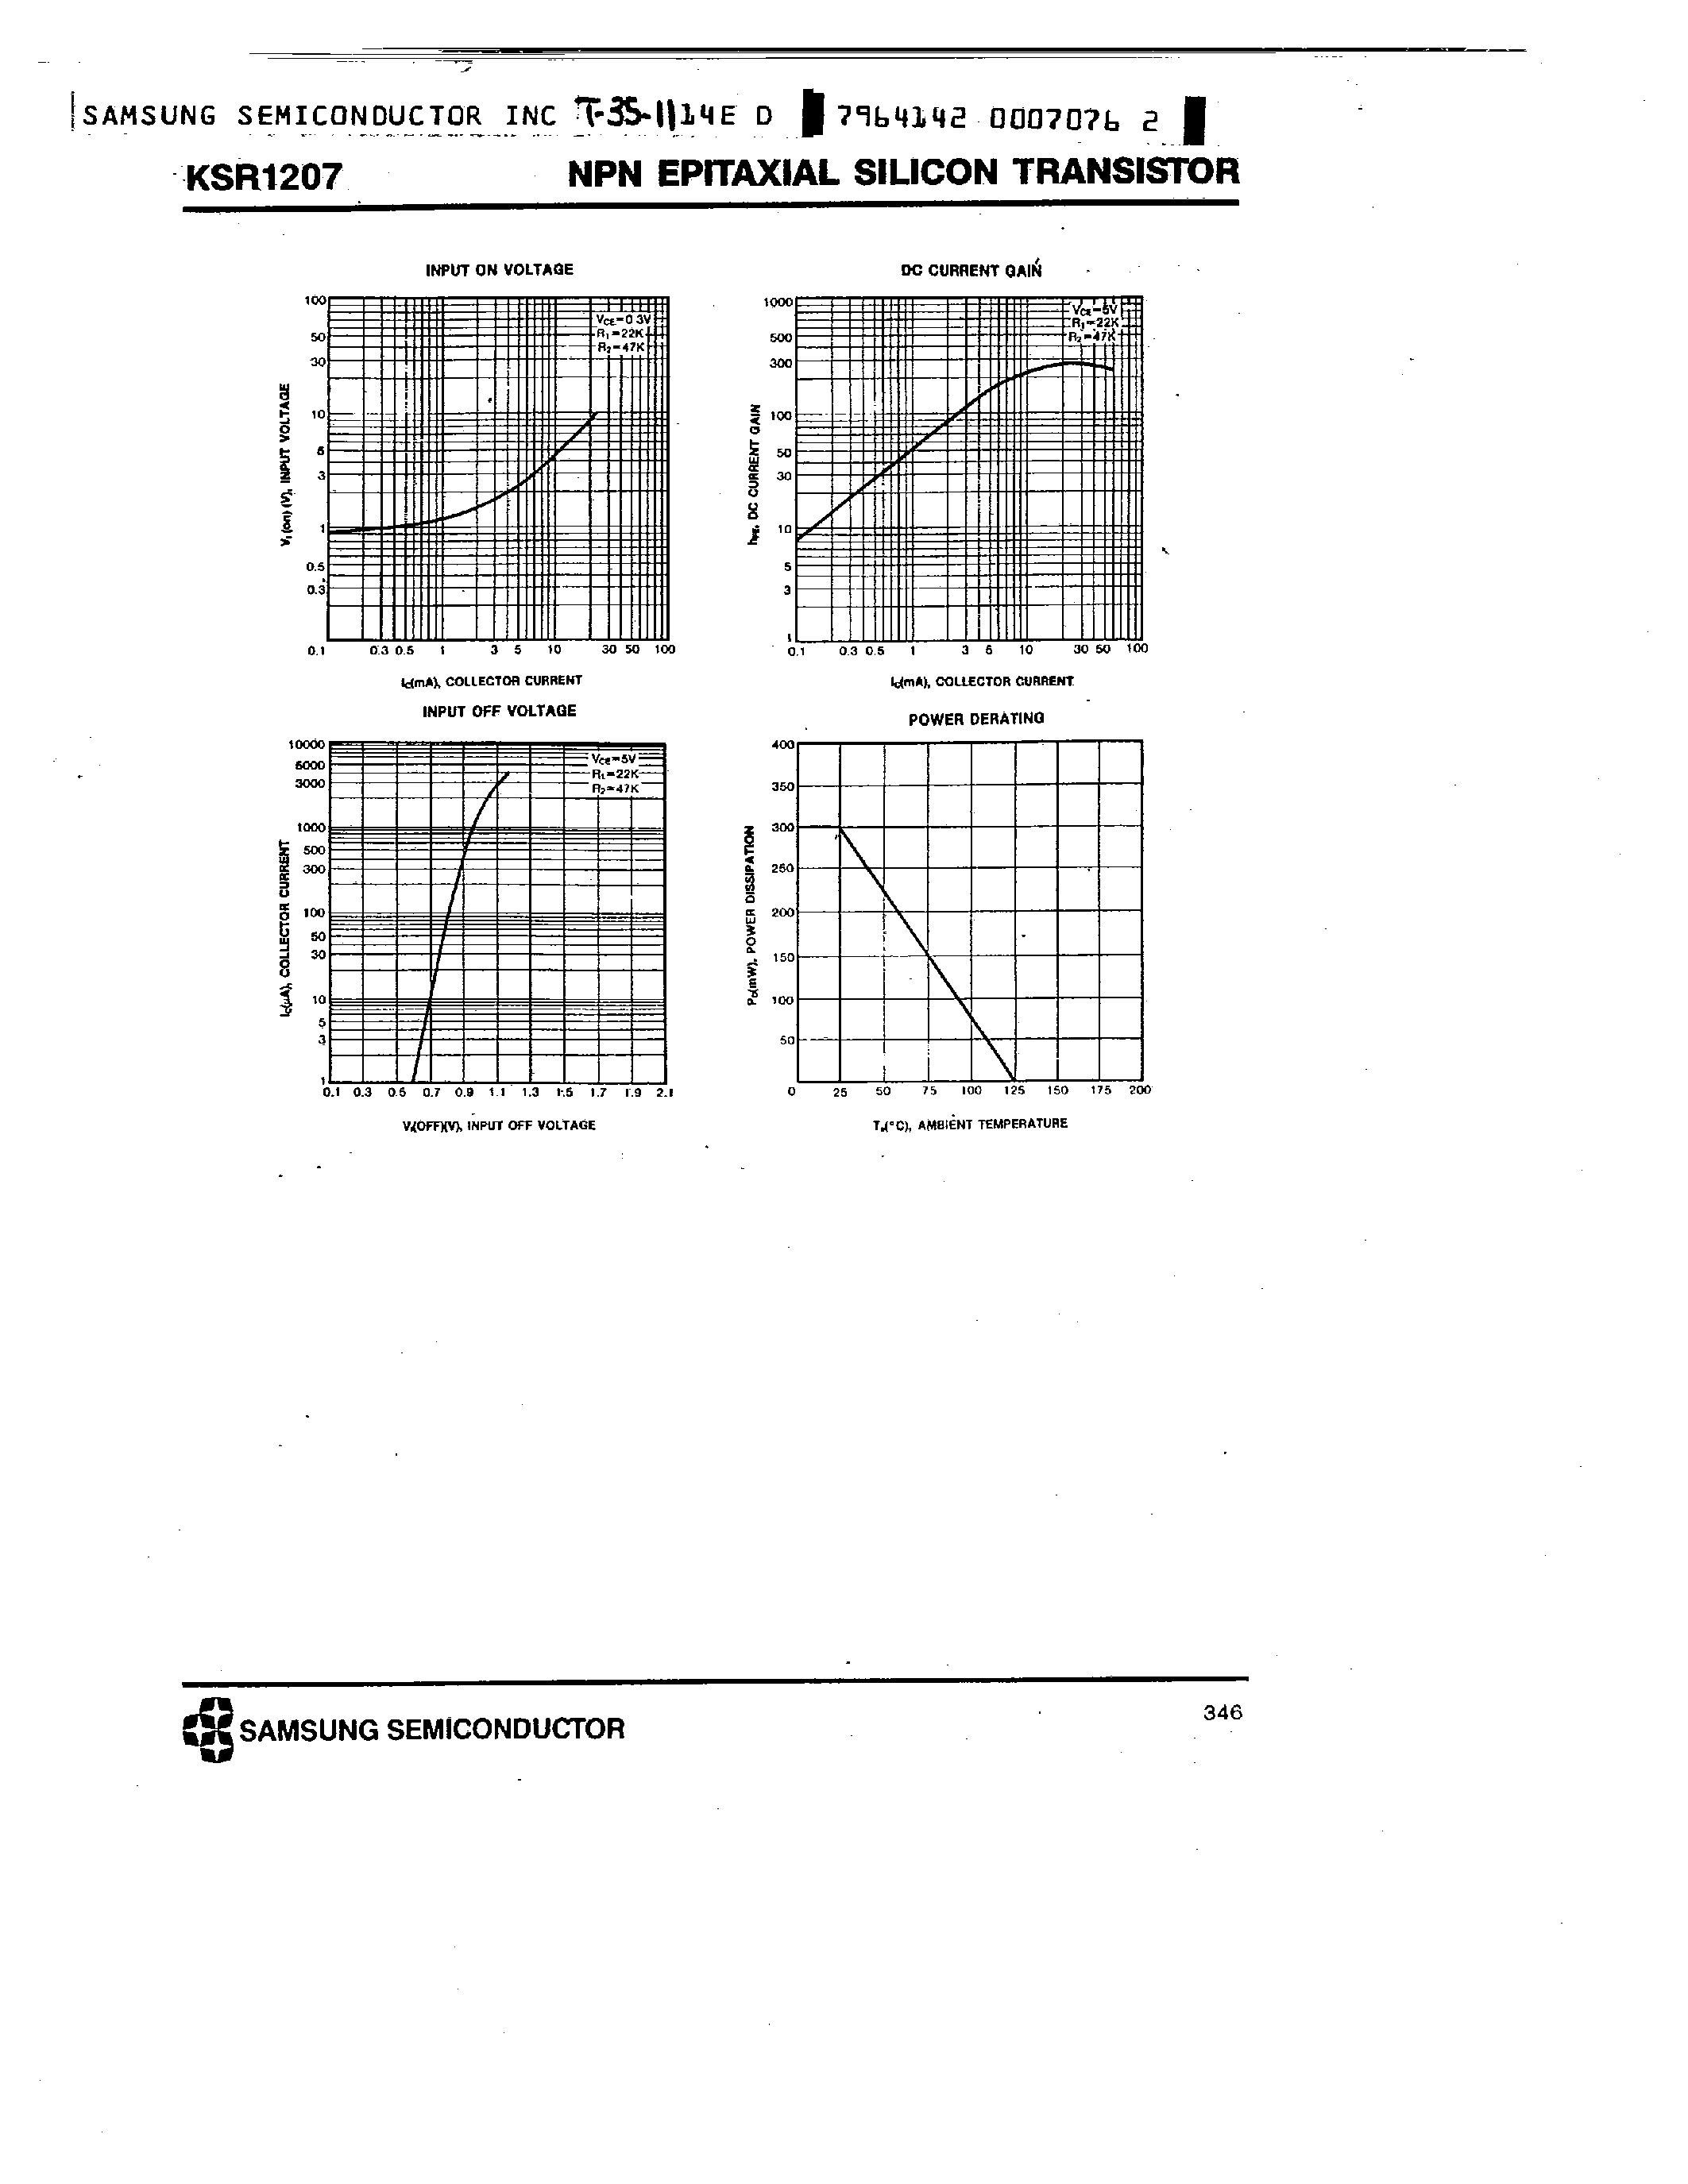 Datasheet KSR1207 - NPN (SWITCHING APPLICATION) page 2